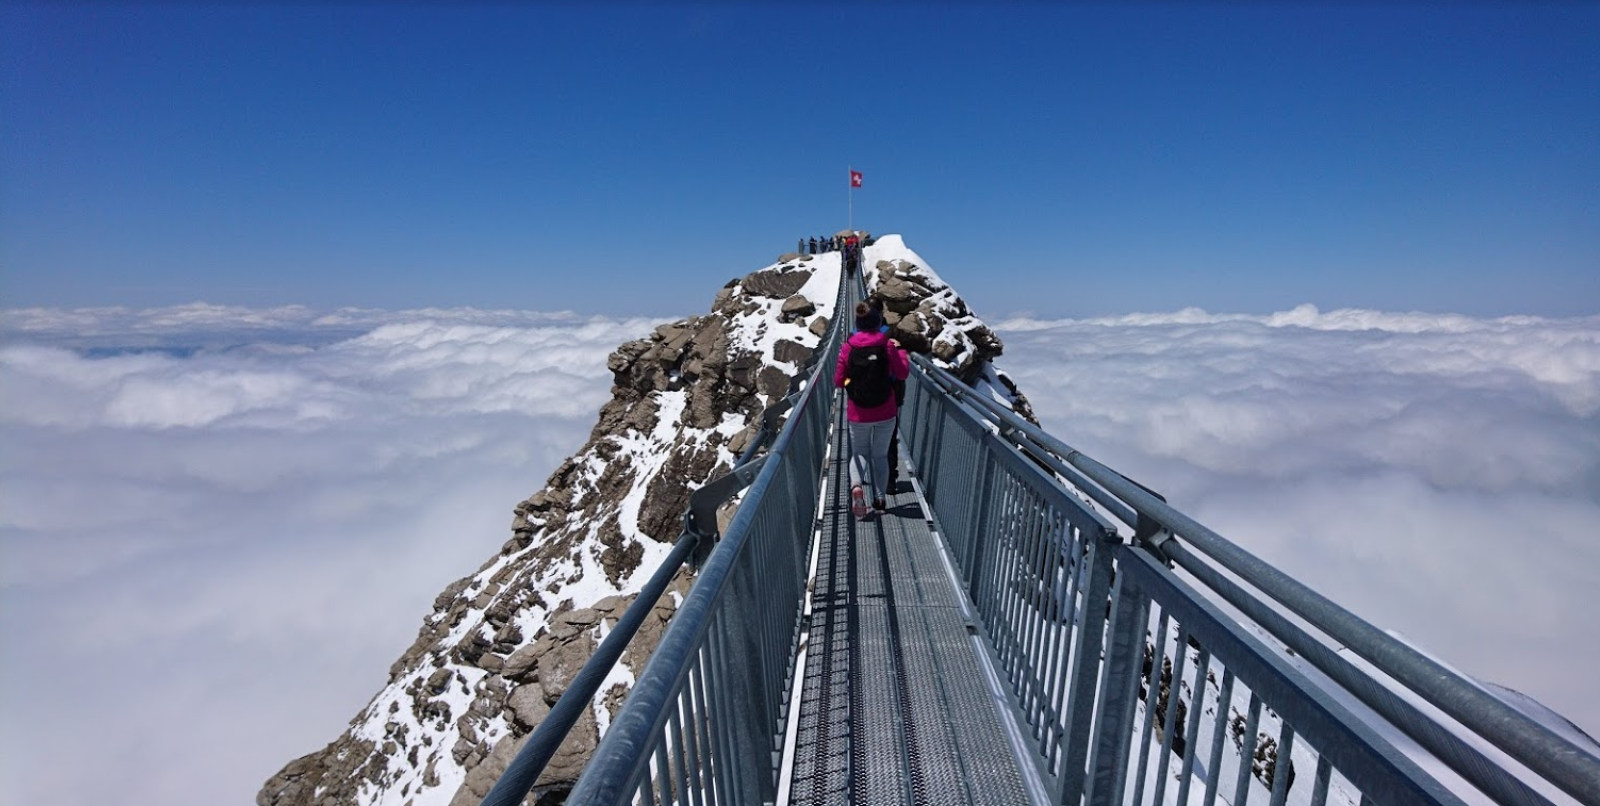 القمة الثلجية غلاسير 3000 ، غشتاد ، سويسرا